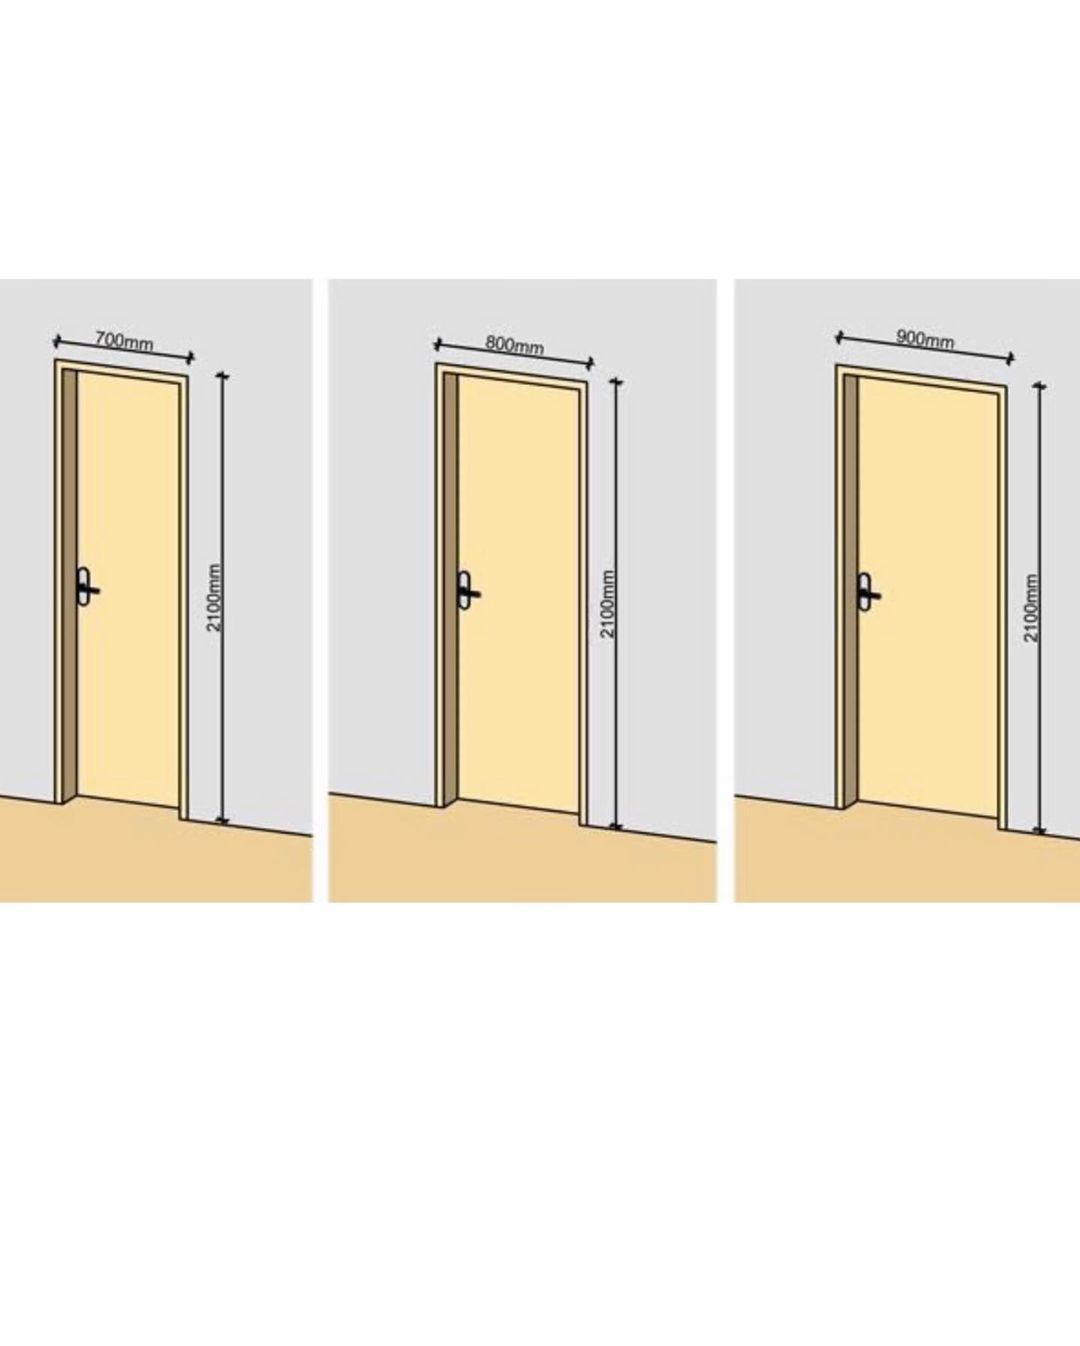 Сколько по времени устанавливают дверь. Высота проема межкомнатной двери стандарт. Стандартный размер полотна межкомнатной двери. Ширина дверного проема межкомнатной двери стандарт. Высота дверного проема межкомнатной двери стандарт.